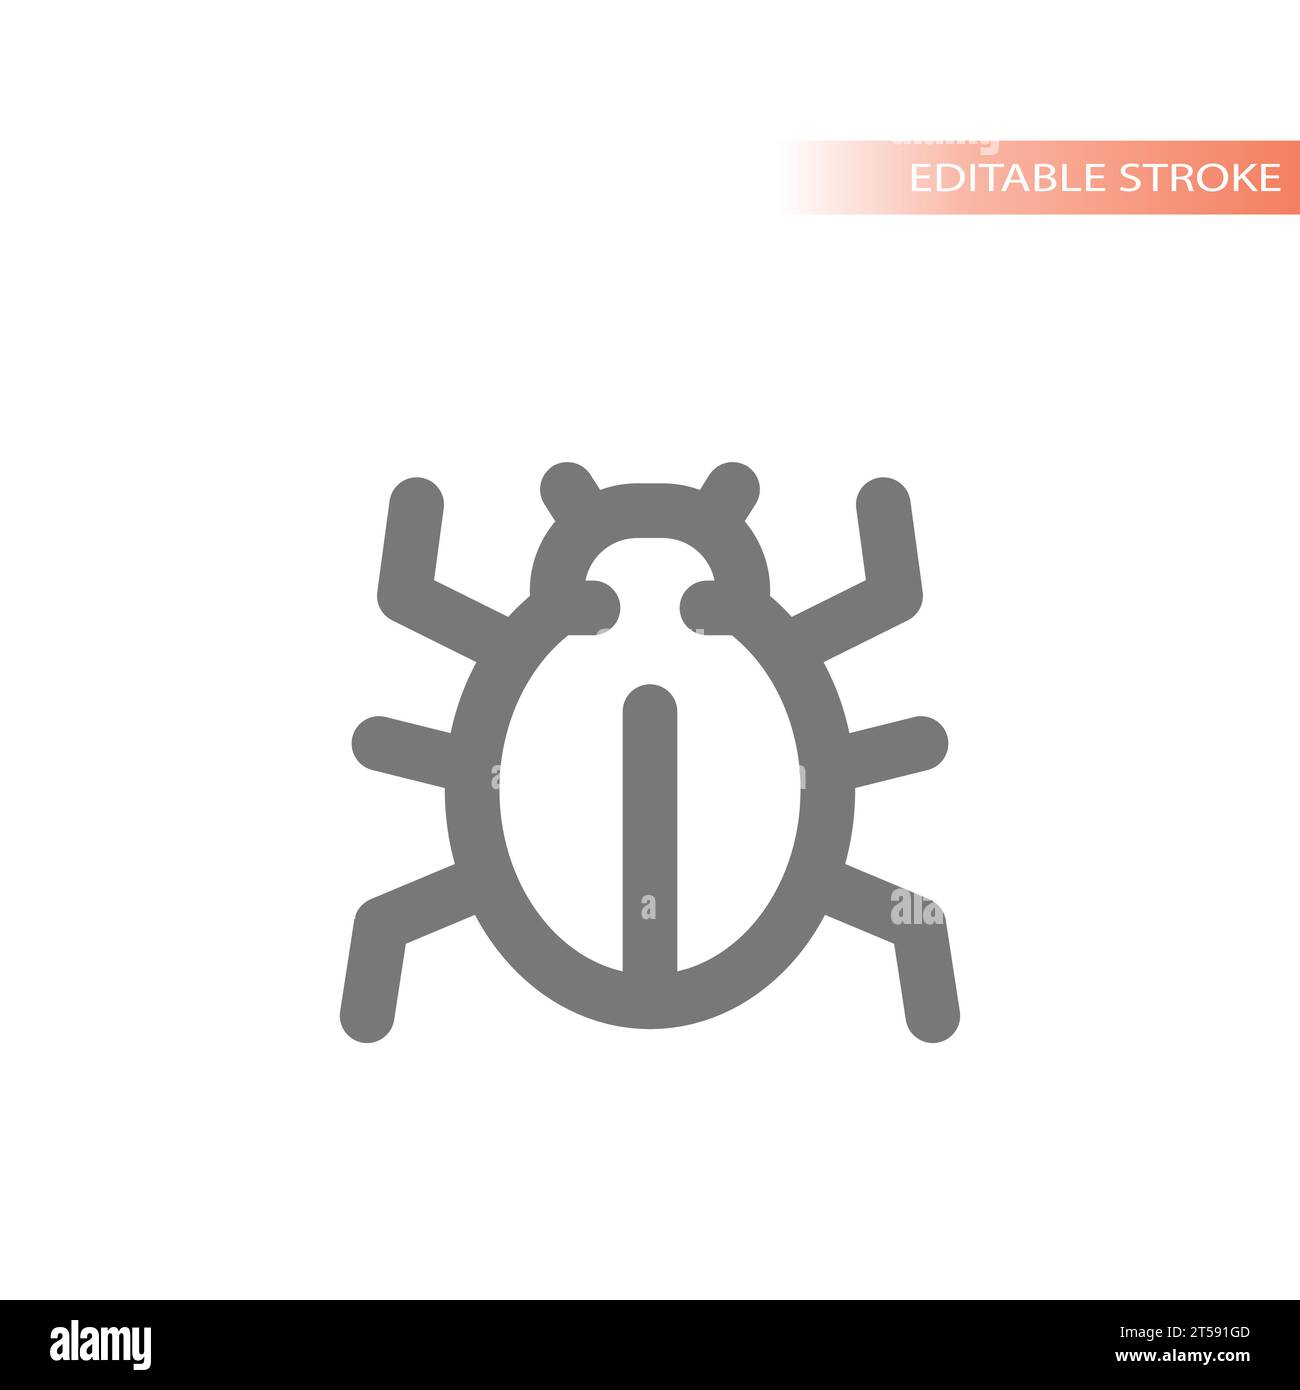 Einfaches Zeilensymbol für Käfer oder Käfer. Scarab, Insekt oder Computervirus-Symbol. Stock Vektor